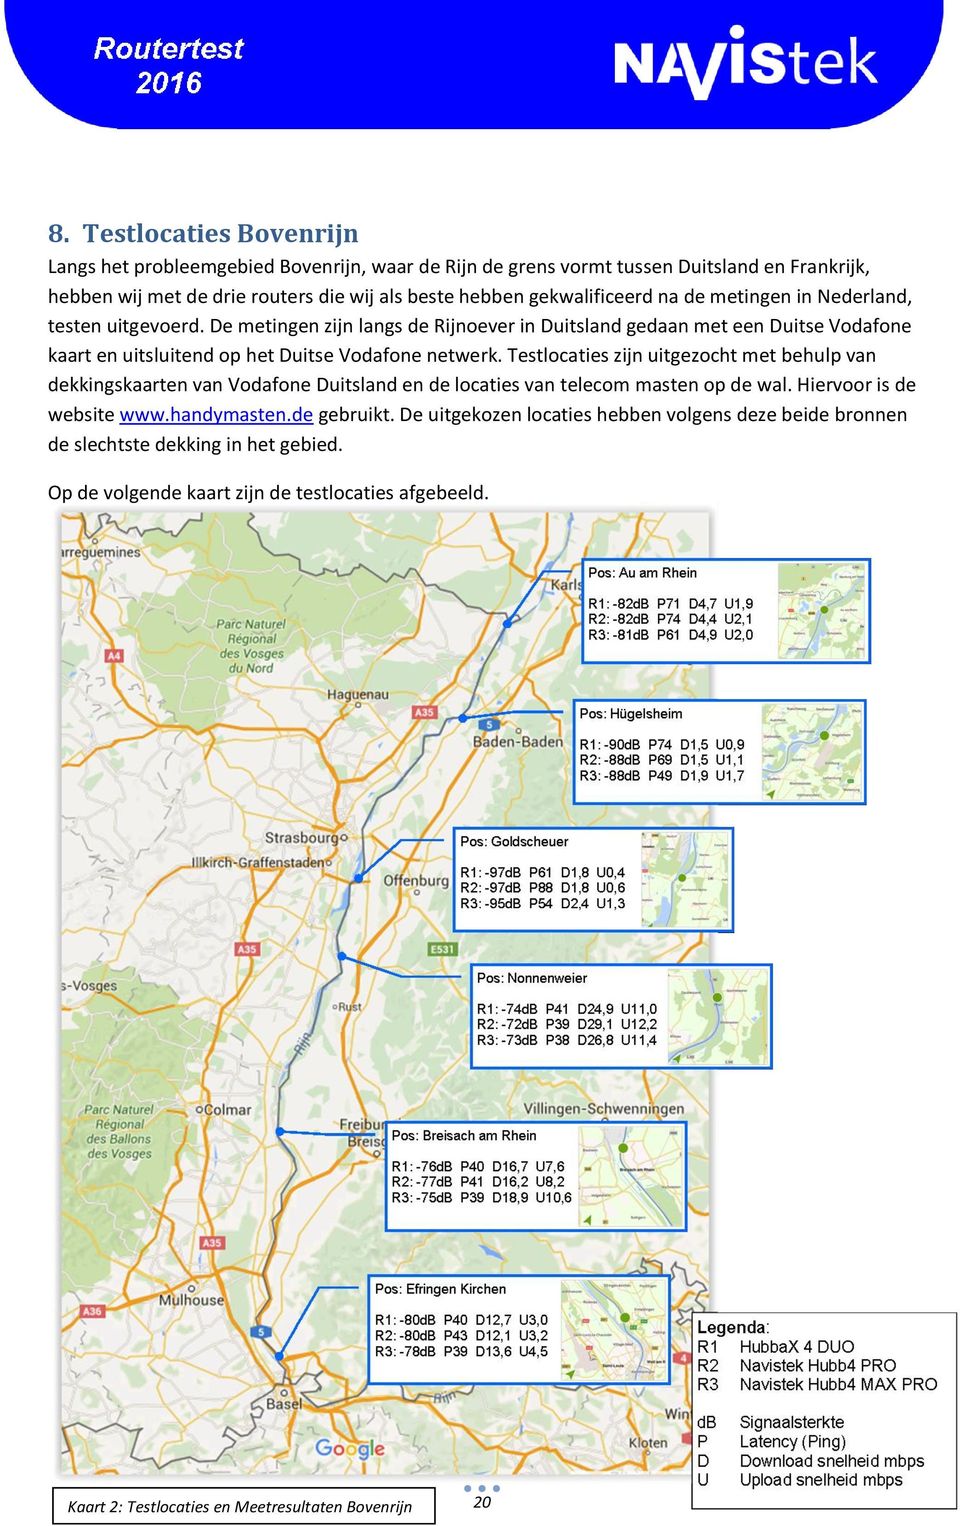 De metingen zijn langs de Rijnoever in Duitsland gedaan met een Duitse Vodafone kaart en uitsluitend op het Duitse Vodafone netwerk.